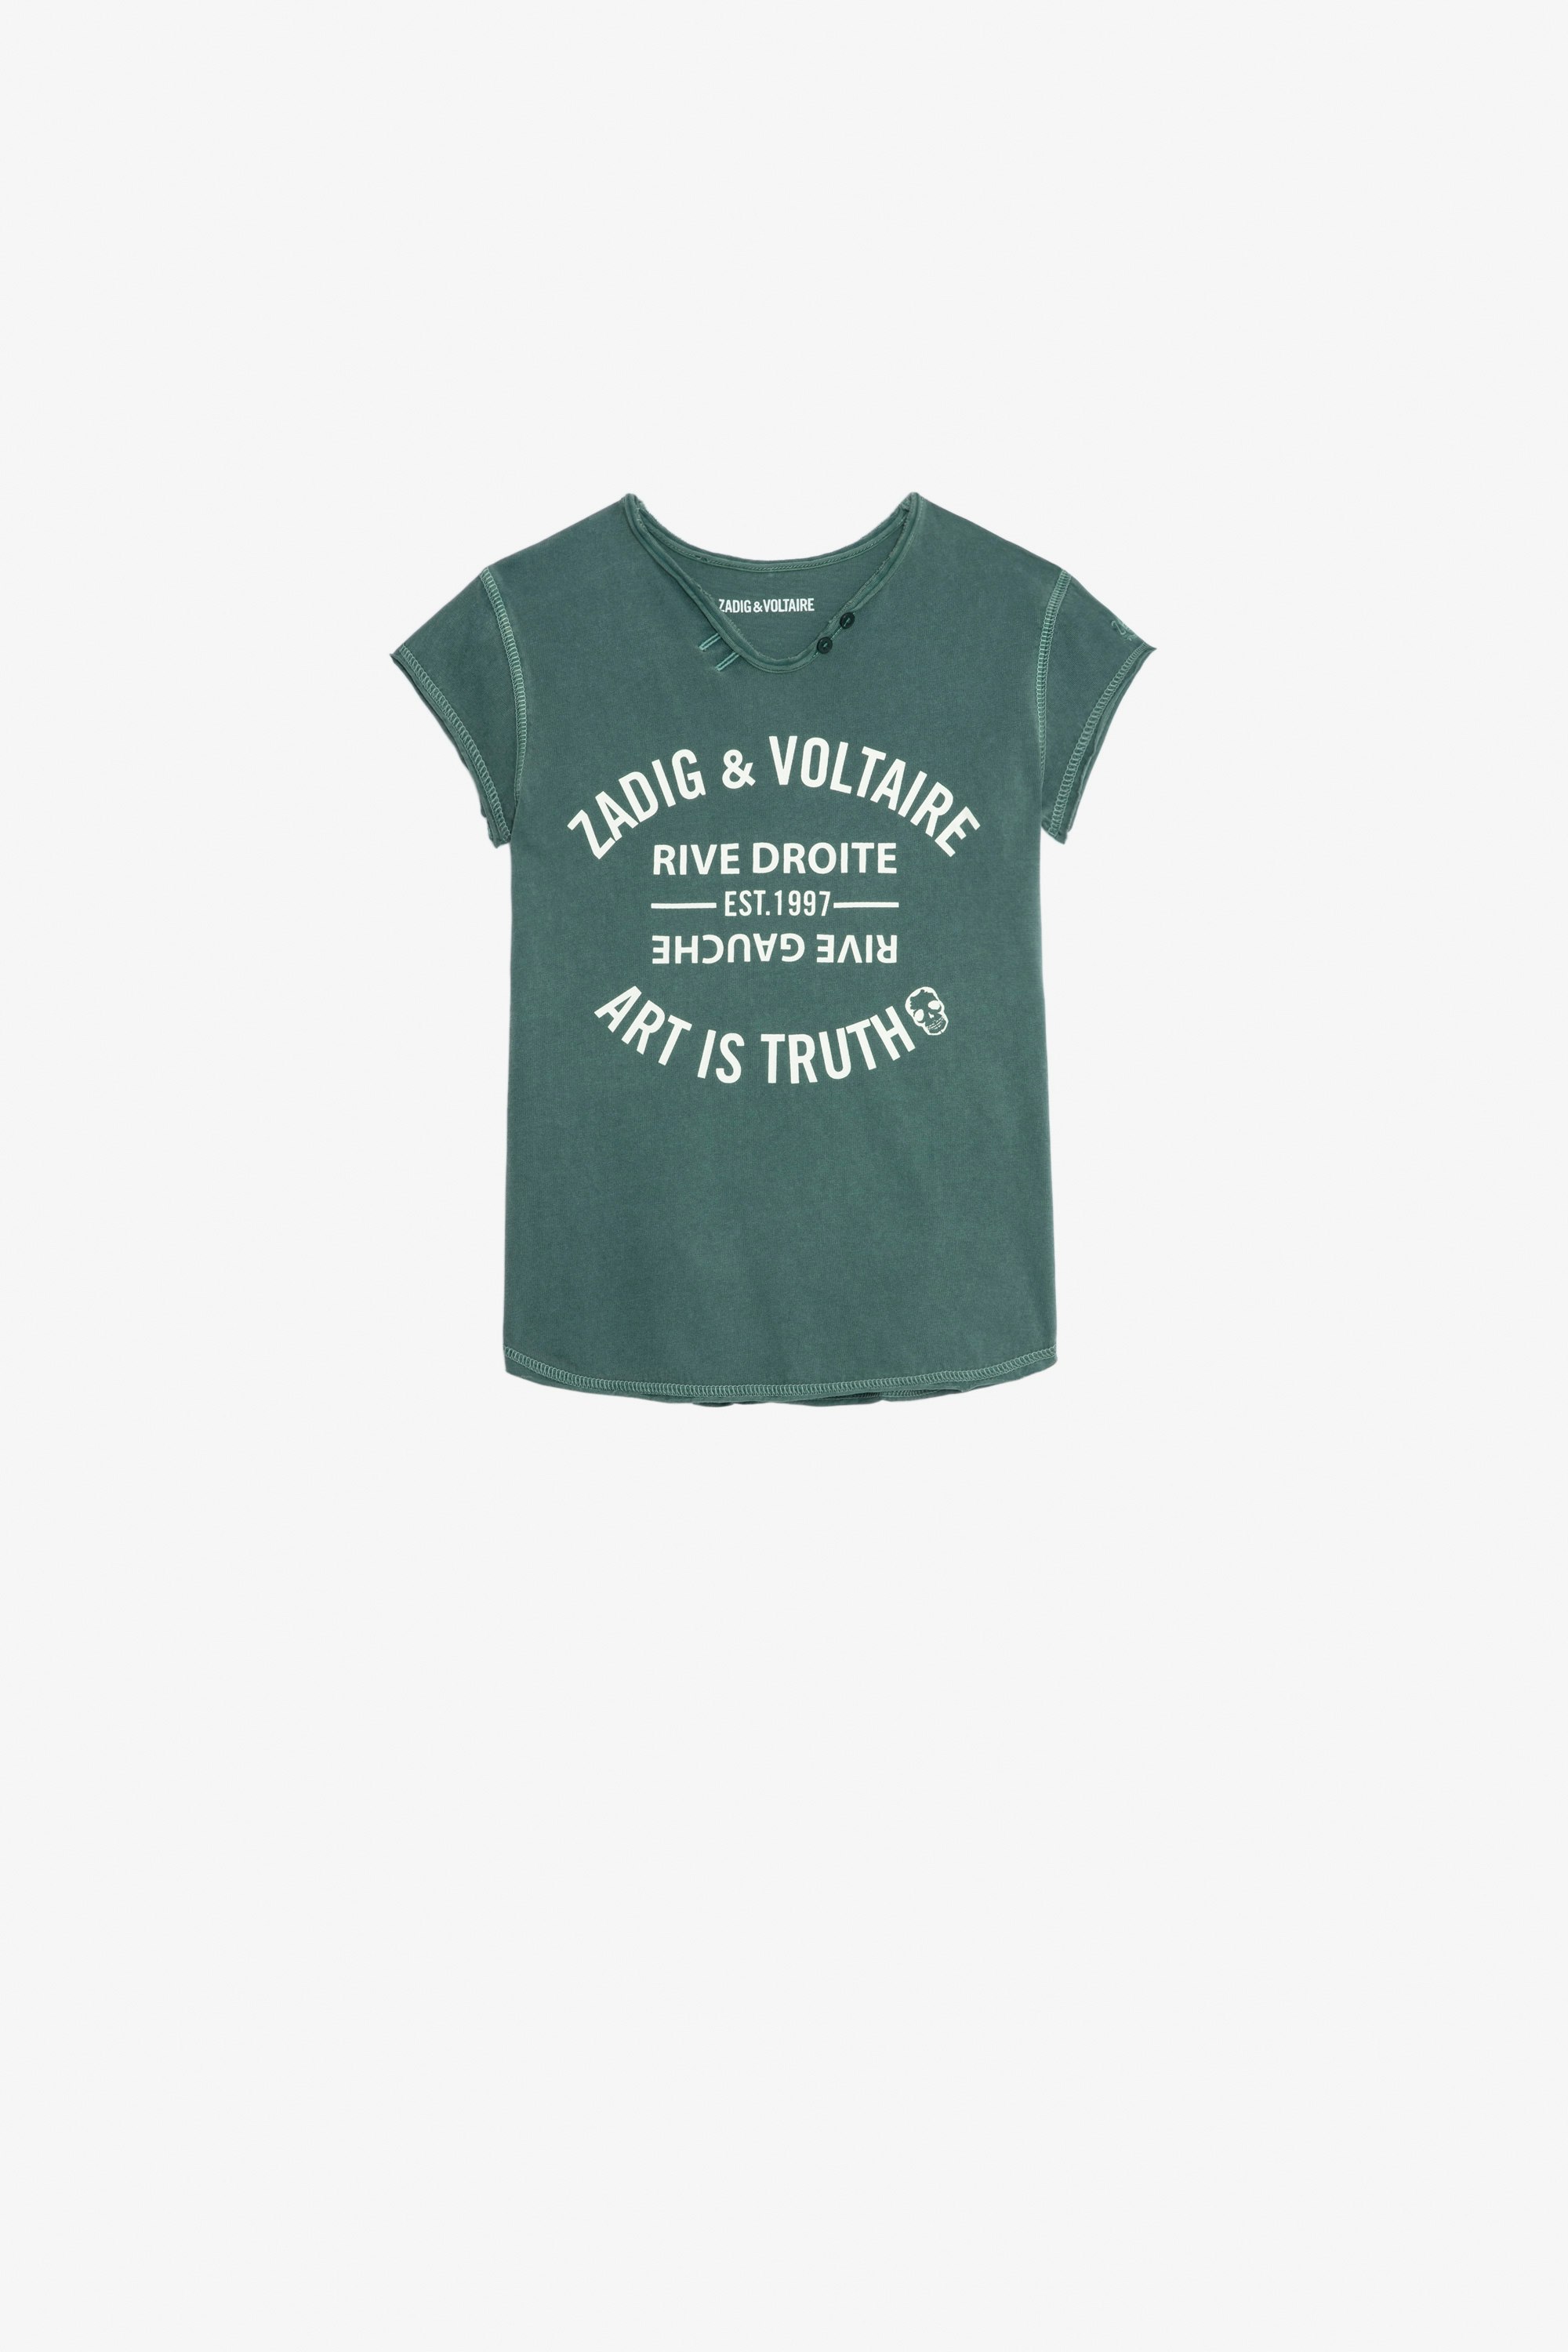 Camiseta Boxo Niña Camiseta verde oscuro de punto de algodón de manga corta estampado de escudo y bordado para niña.